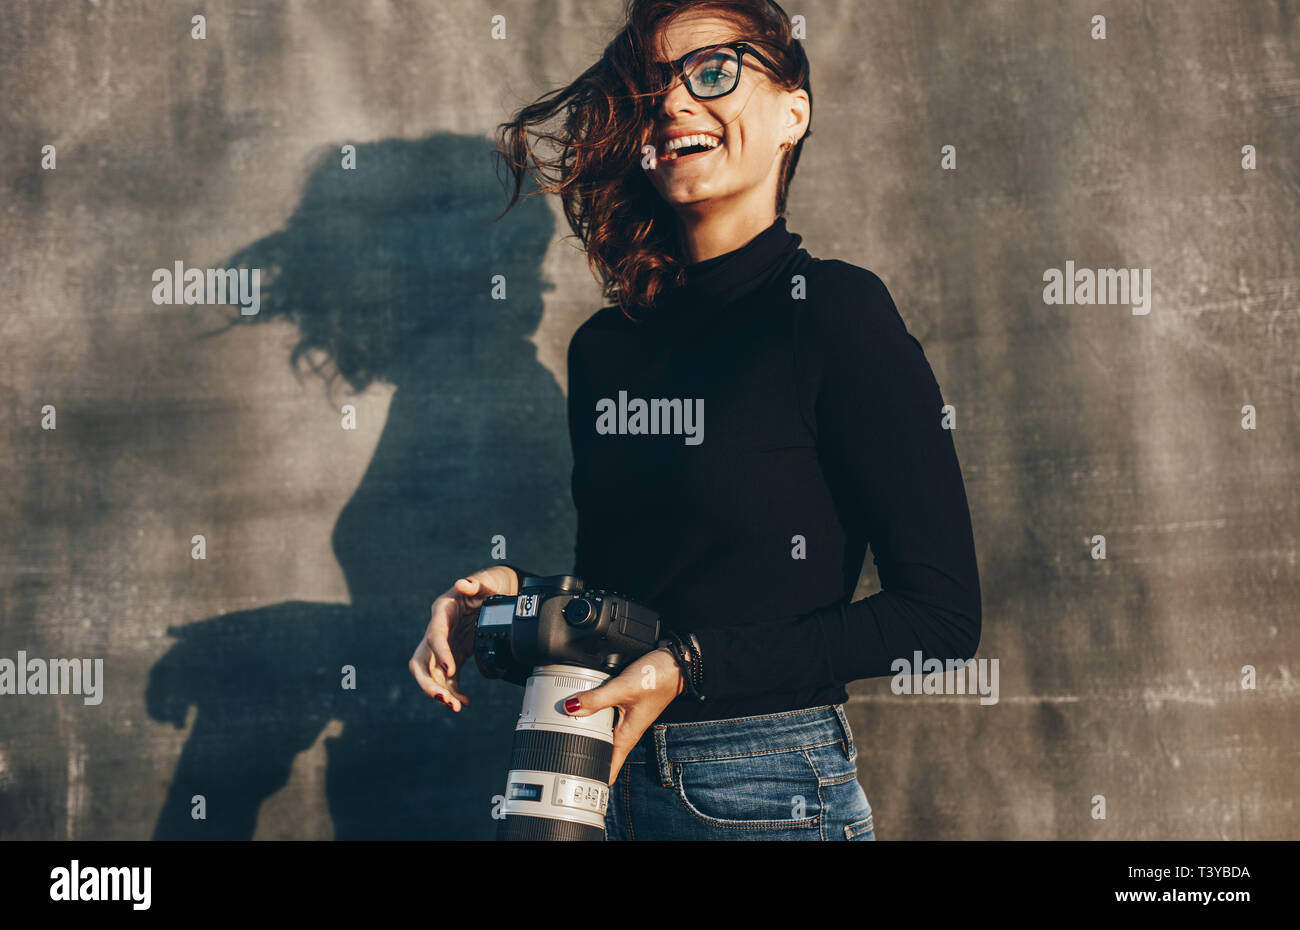 Laughing young woman holding un appareil photo DSLR contre fond brun. Femme photographe réussie sur un shoot photo. Banque D'Images